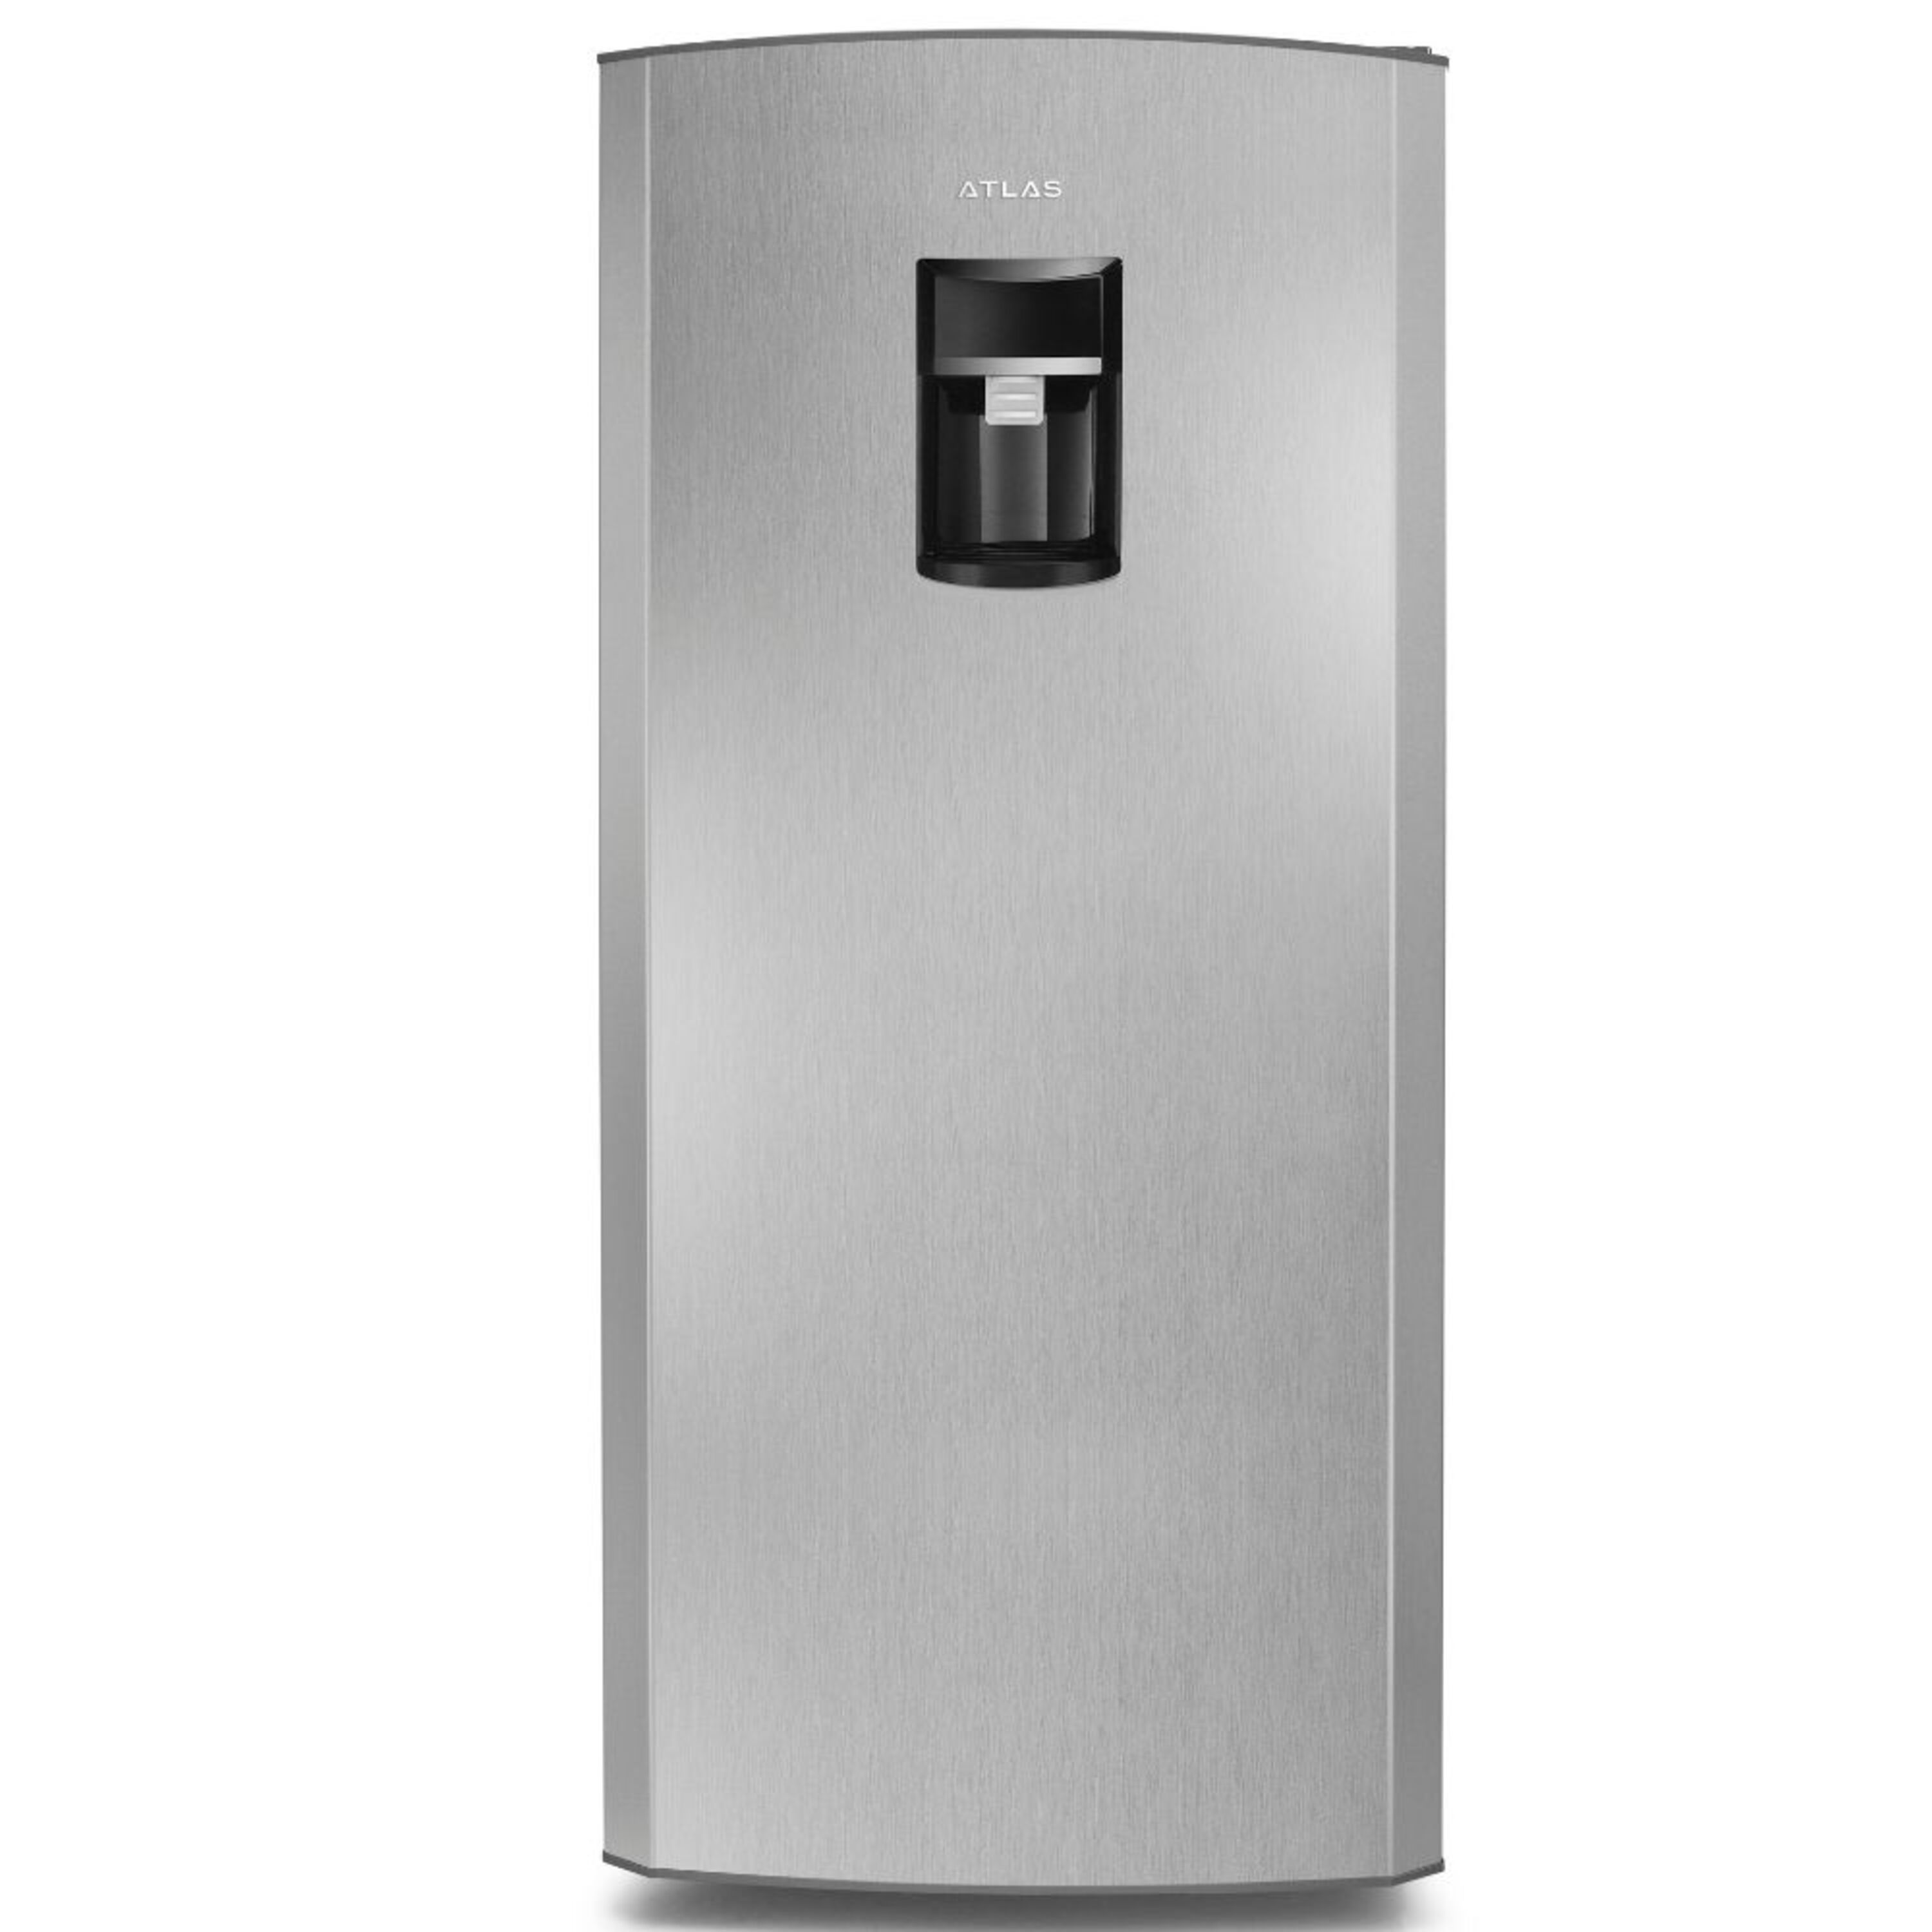 Refrigeradores de 1 puerta